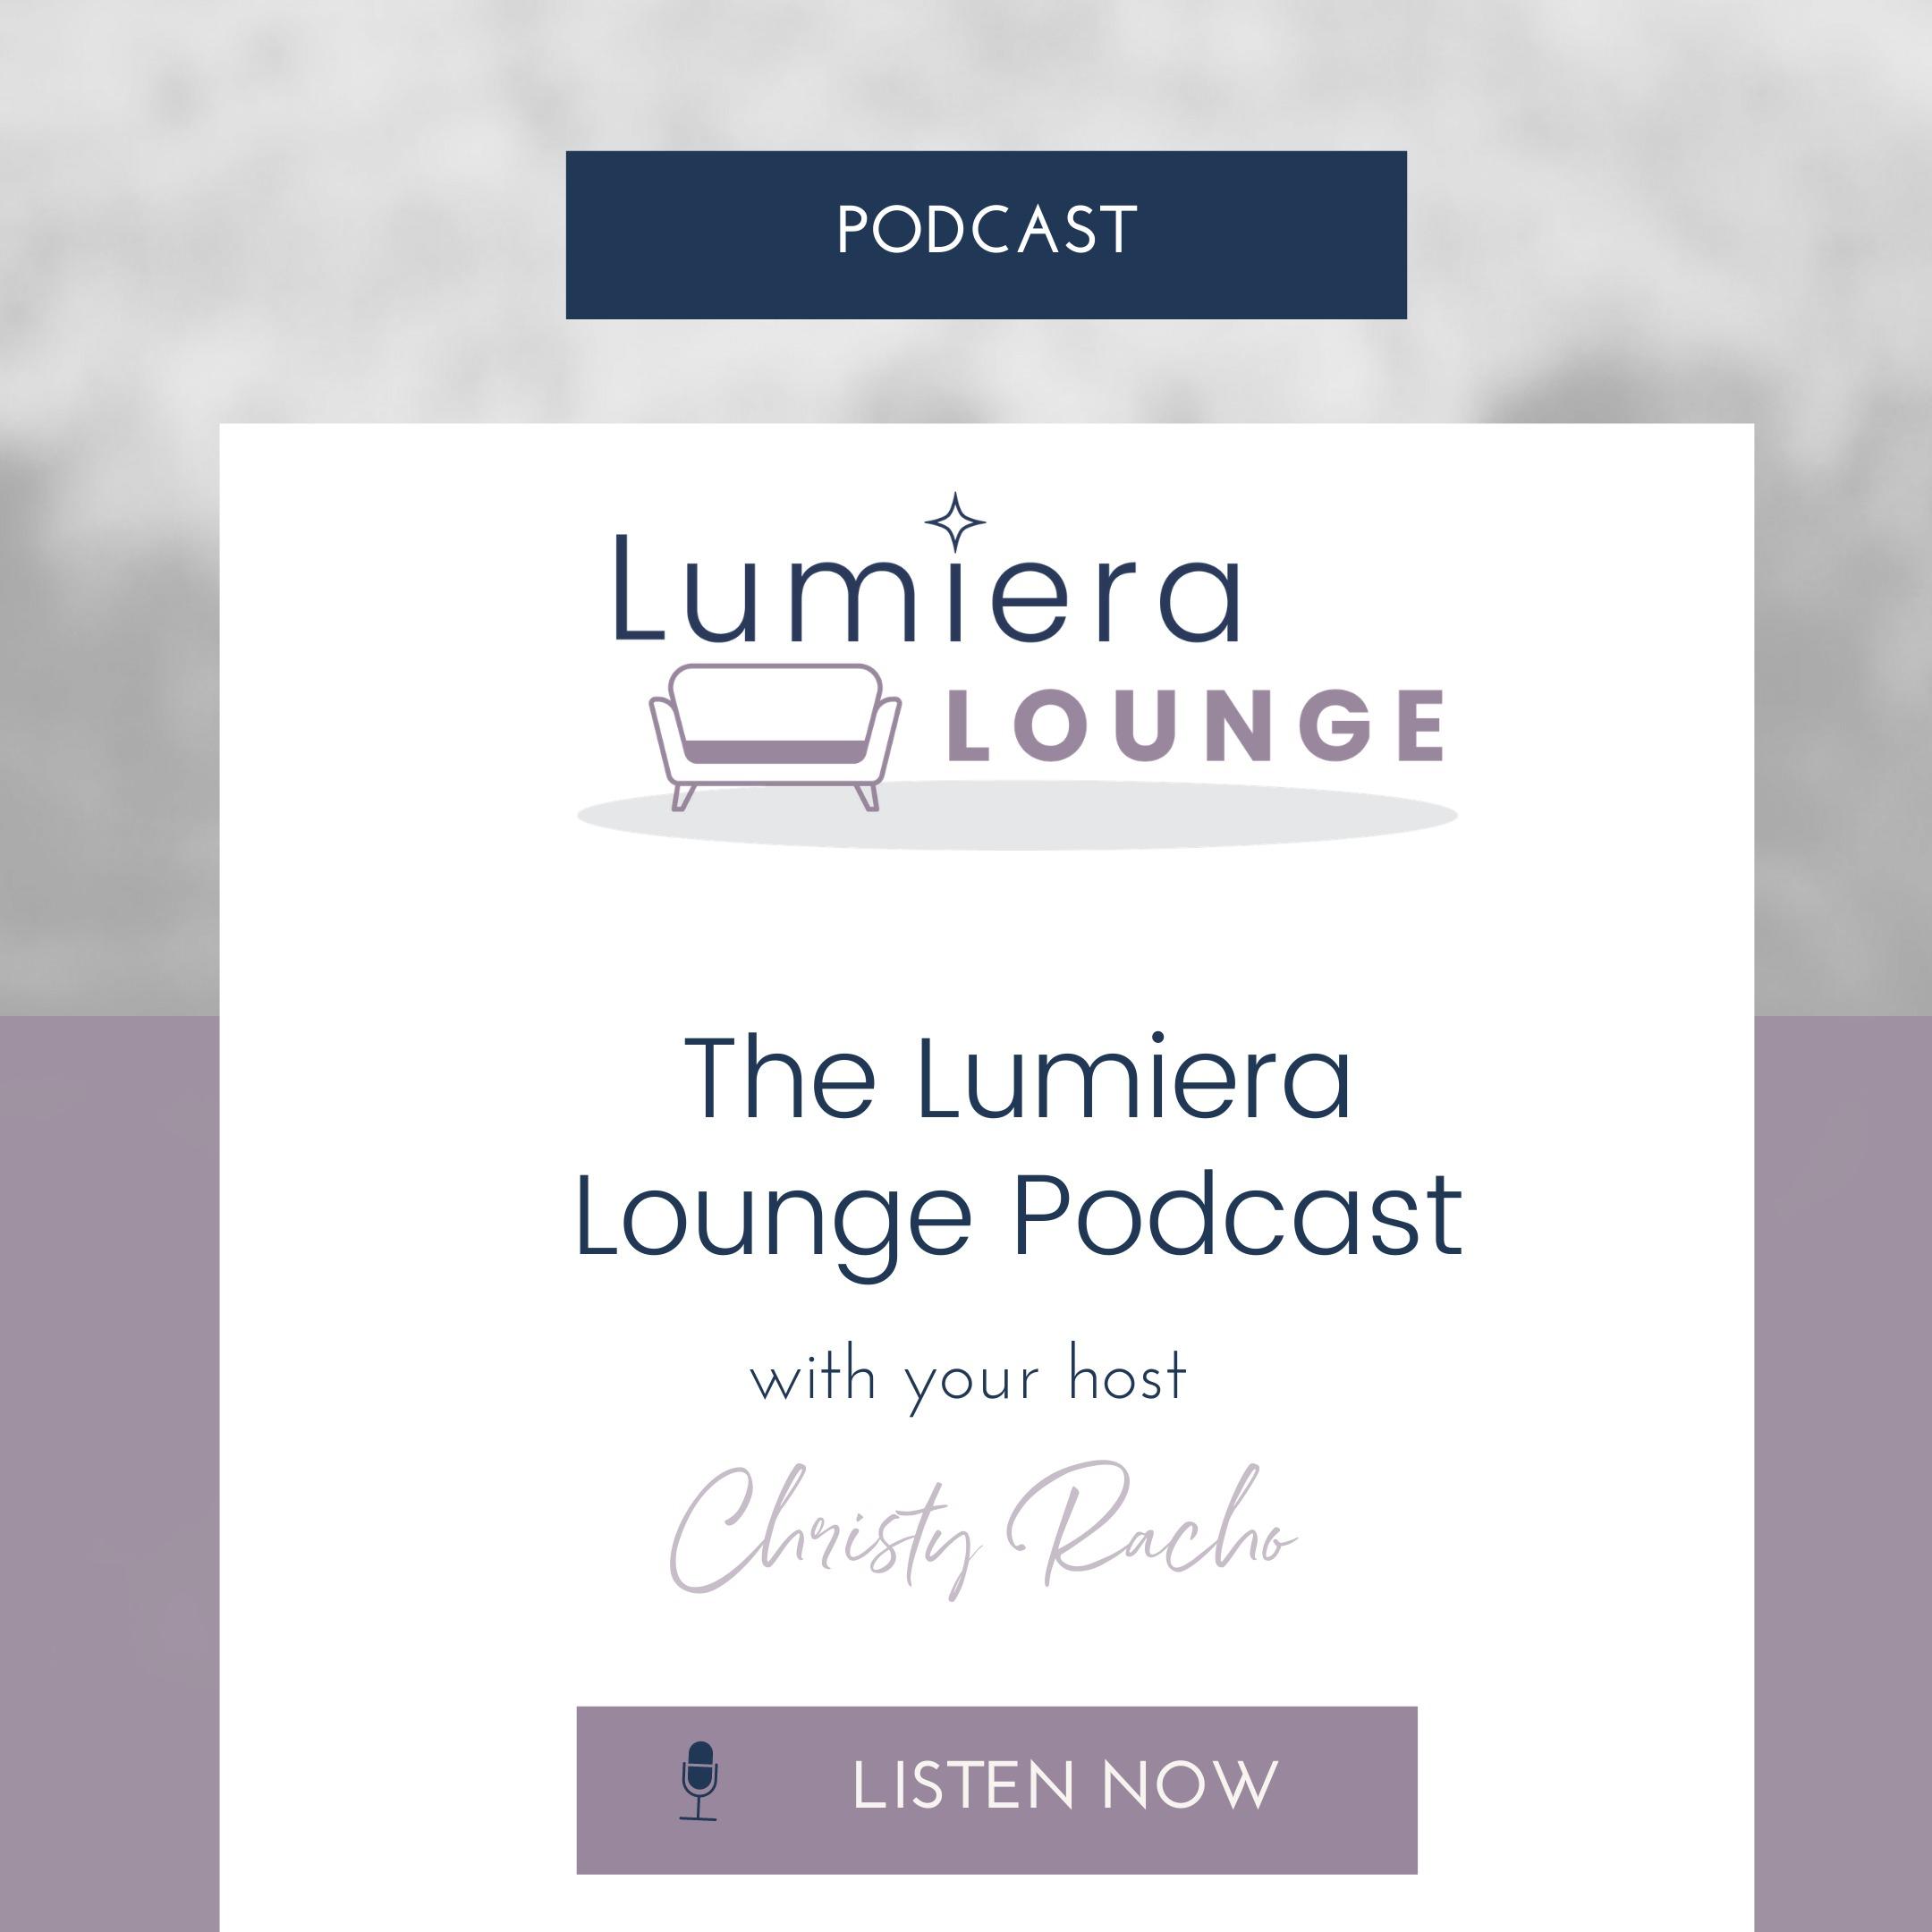 The Lumiera Lounge